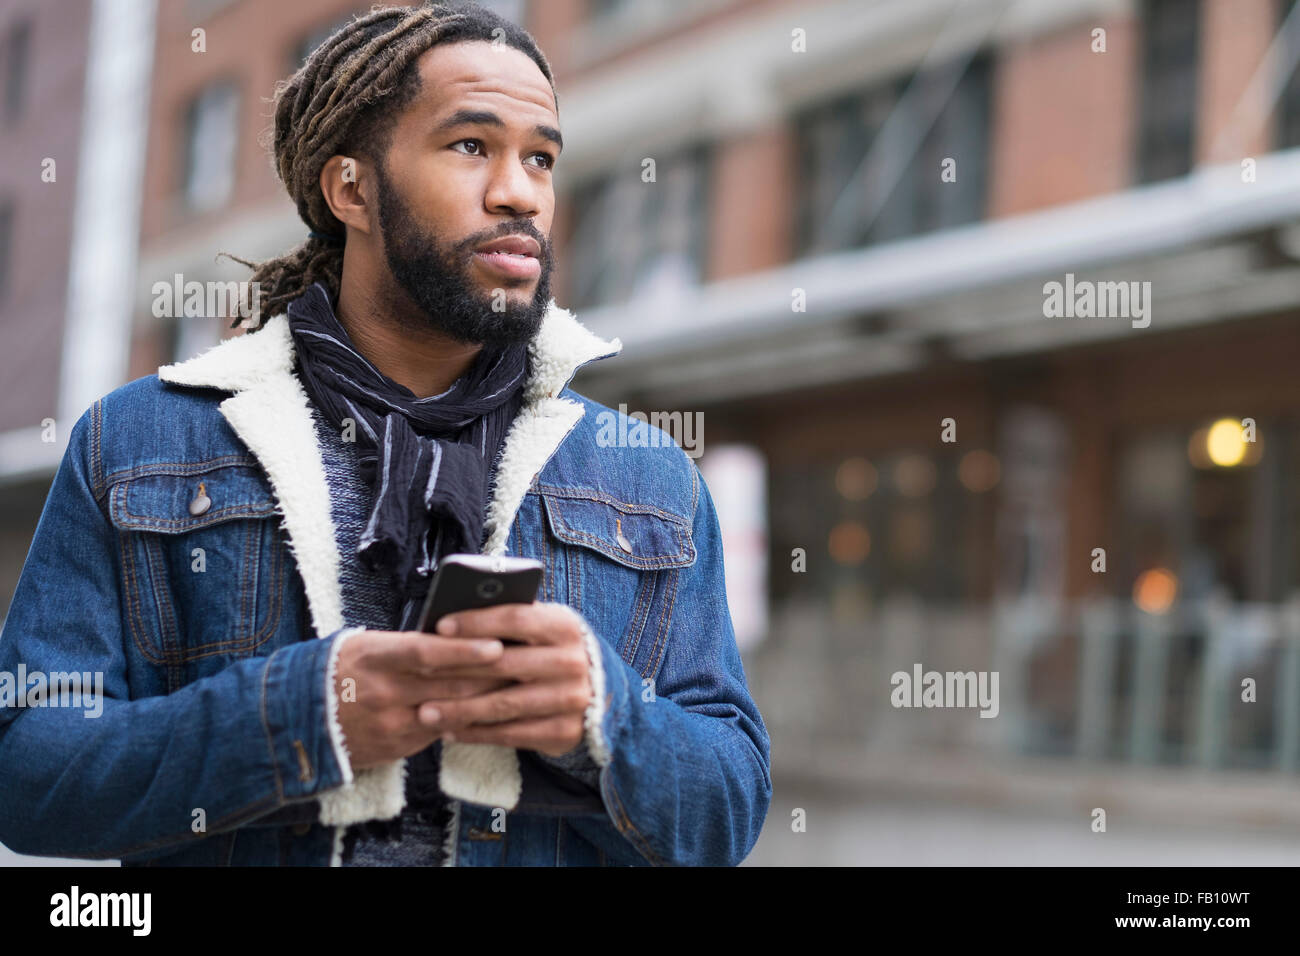 Homme sérieux avec des dreadlocks holding smart phone in street Banque D'Images